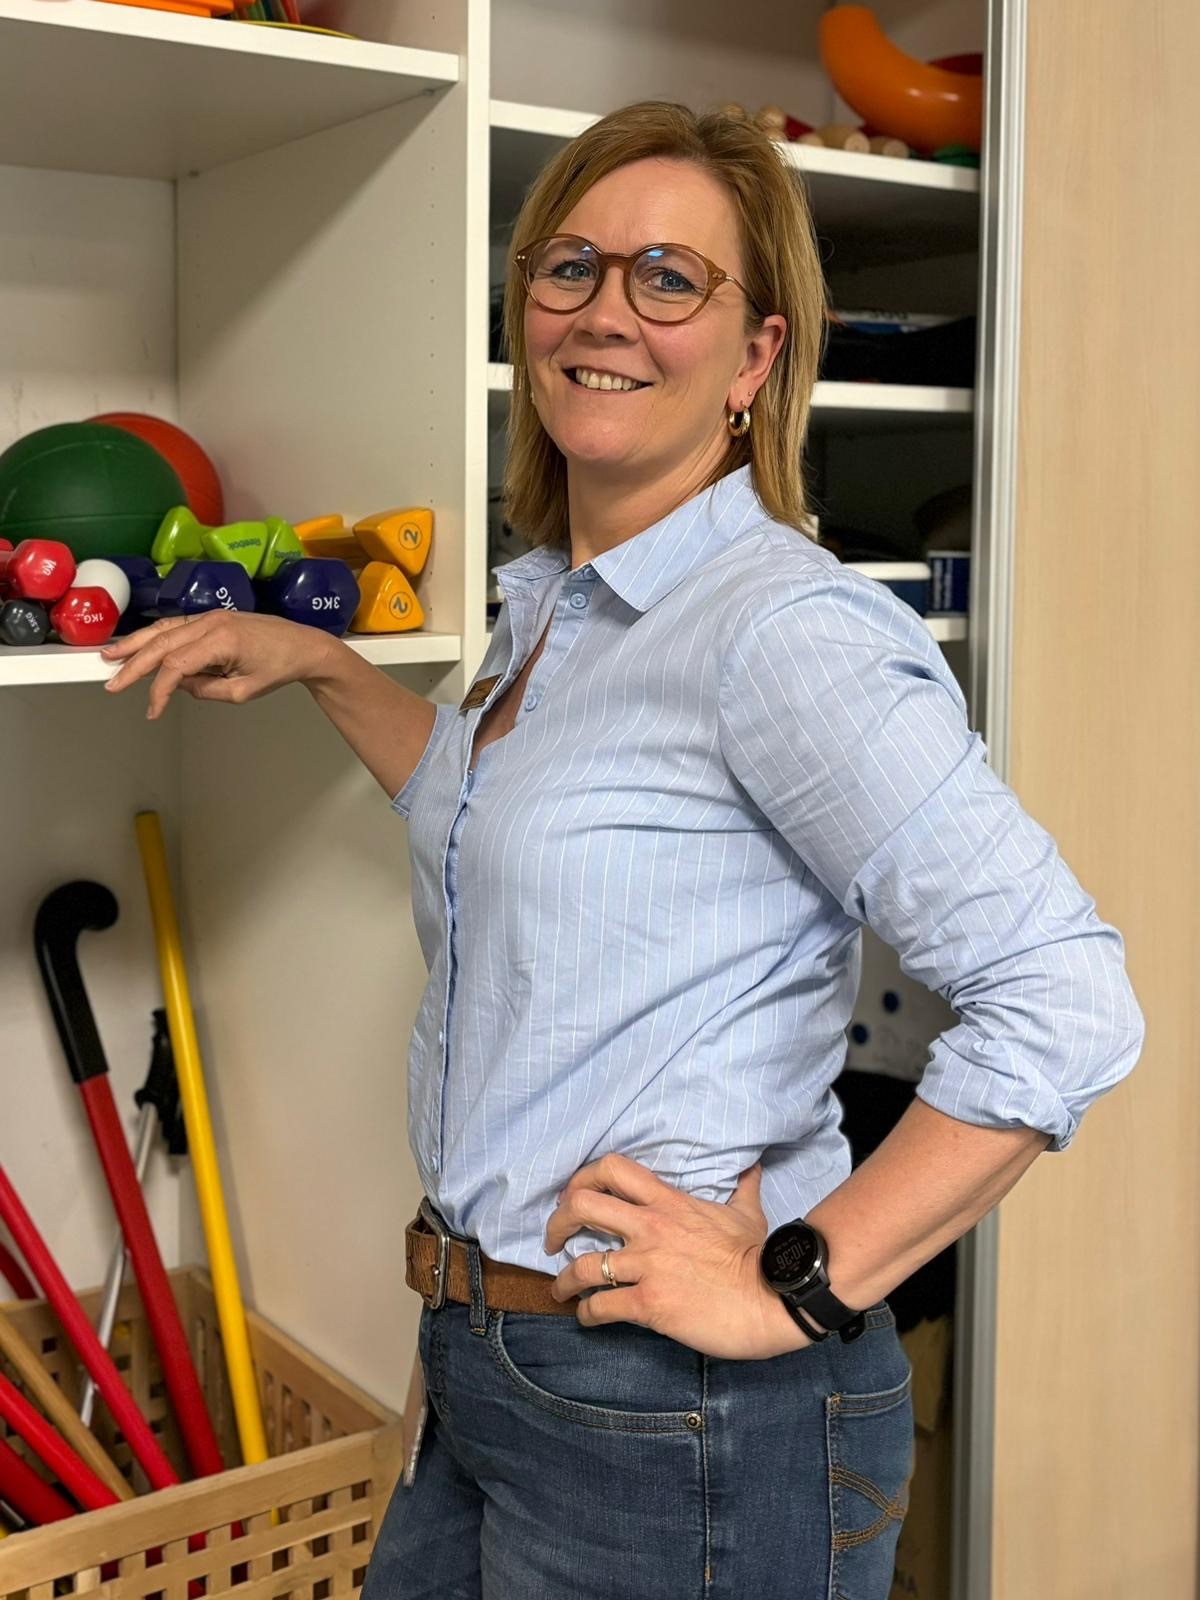 Fysiotherapeut Judith van Tilburg over haar patiënt Astrid Schaper: “Ze ziet altijd een lichtpuntje, ondanks alle tegenslagen”